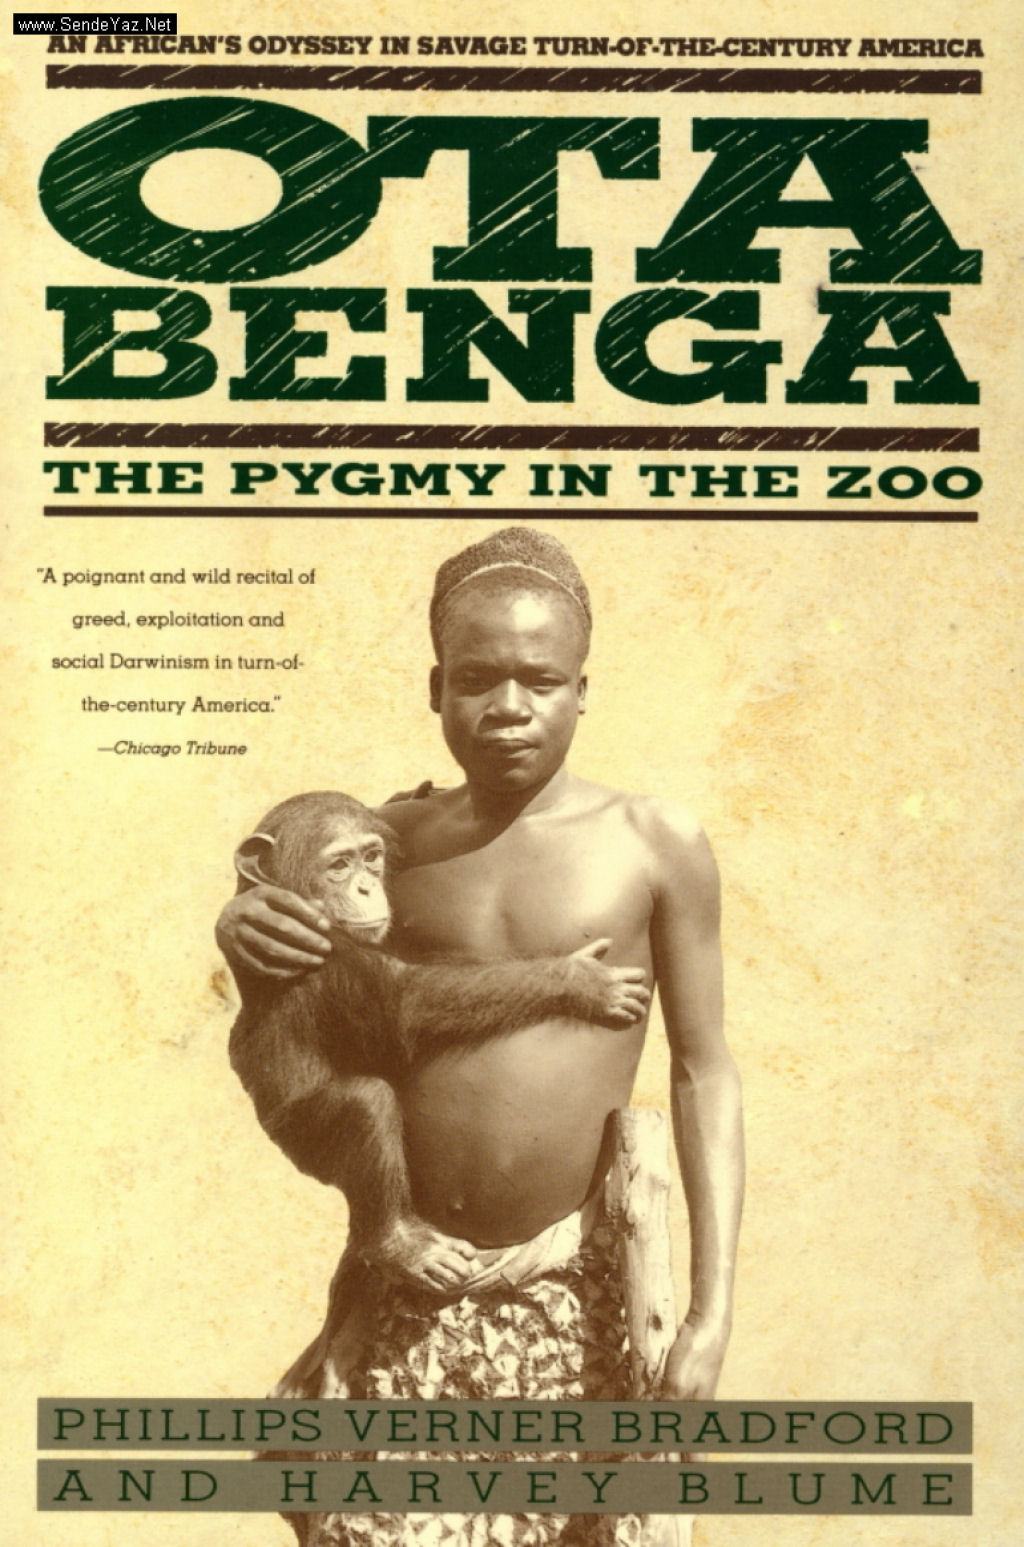 Ota Benga, um pigmeu no zôo de Nova Iorque